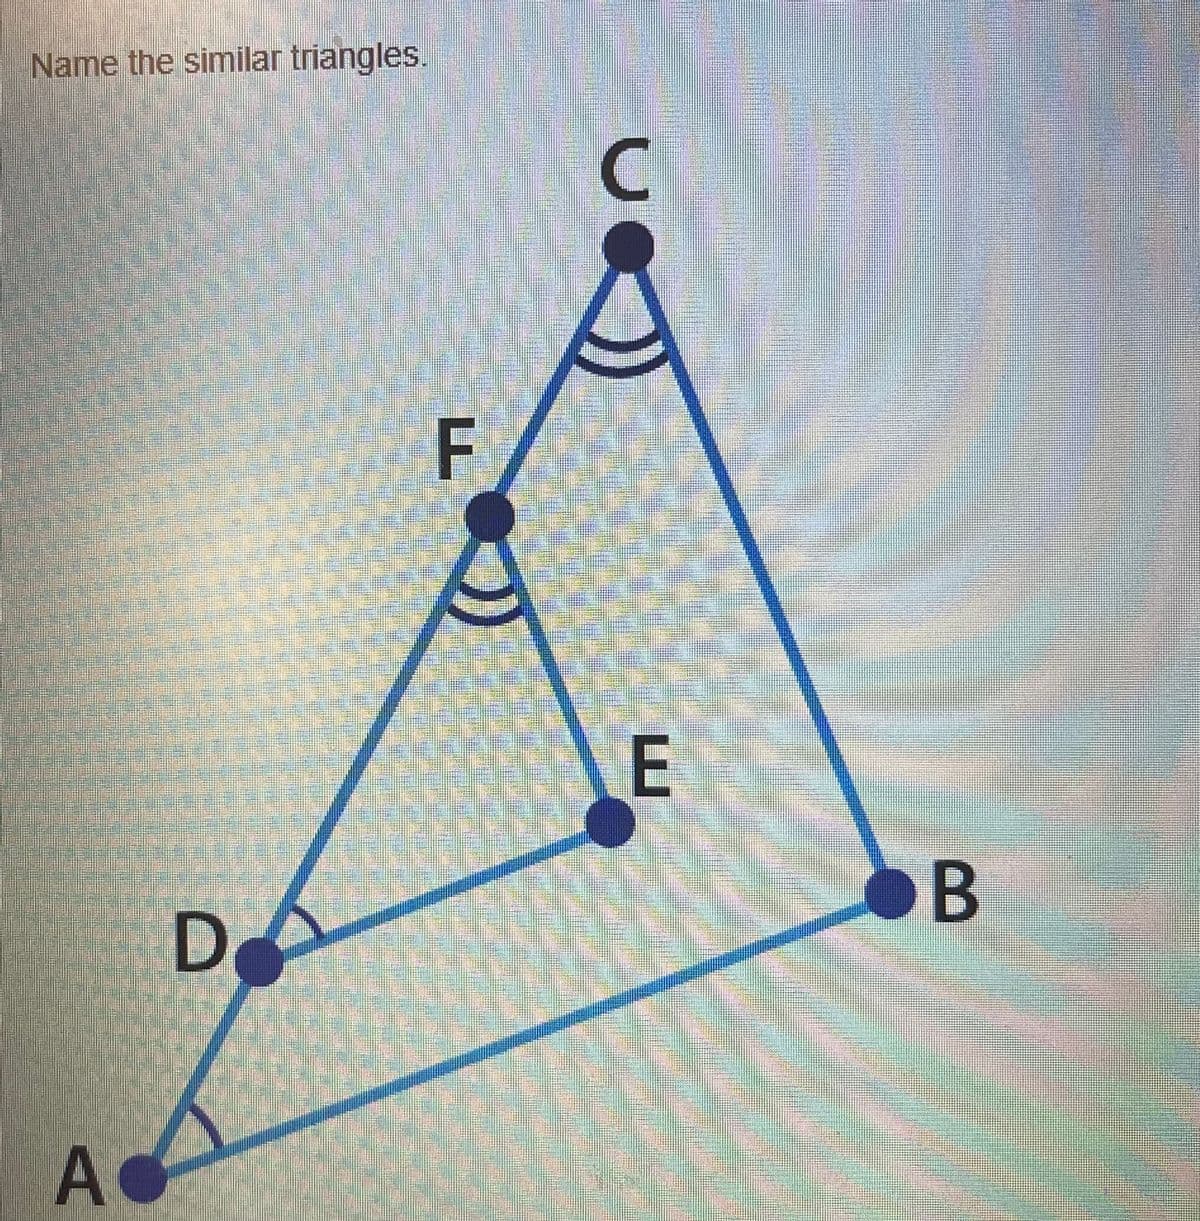 Name the similar triangles.
F
E
B
D
A
